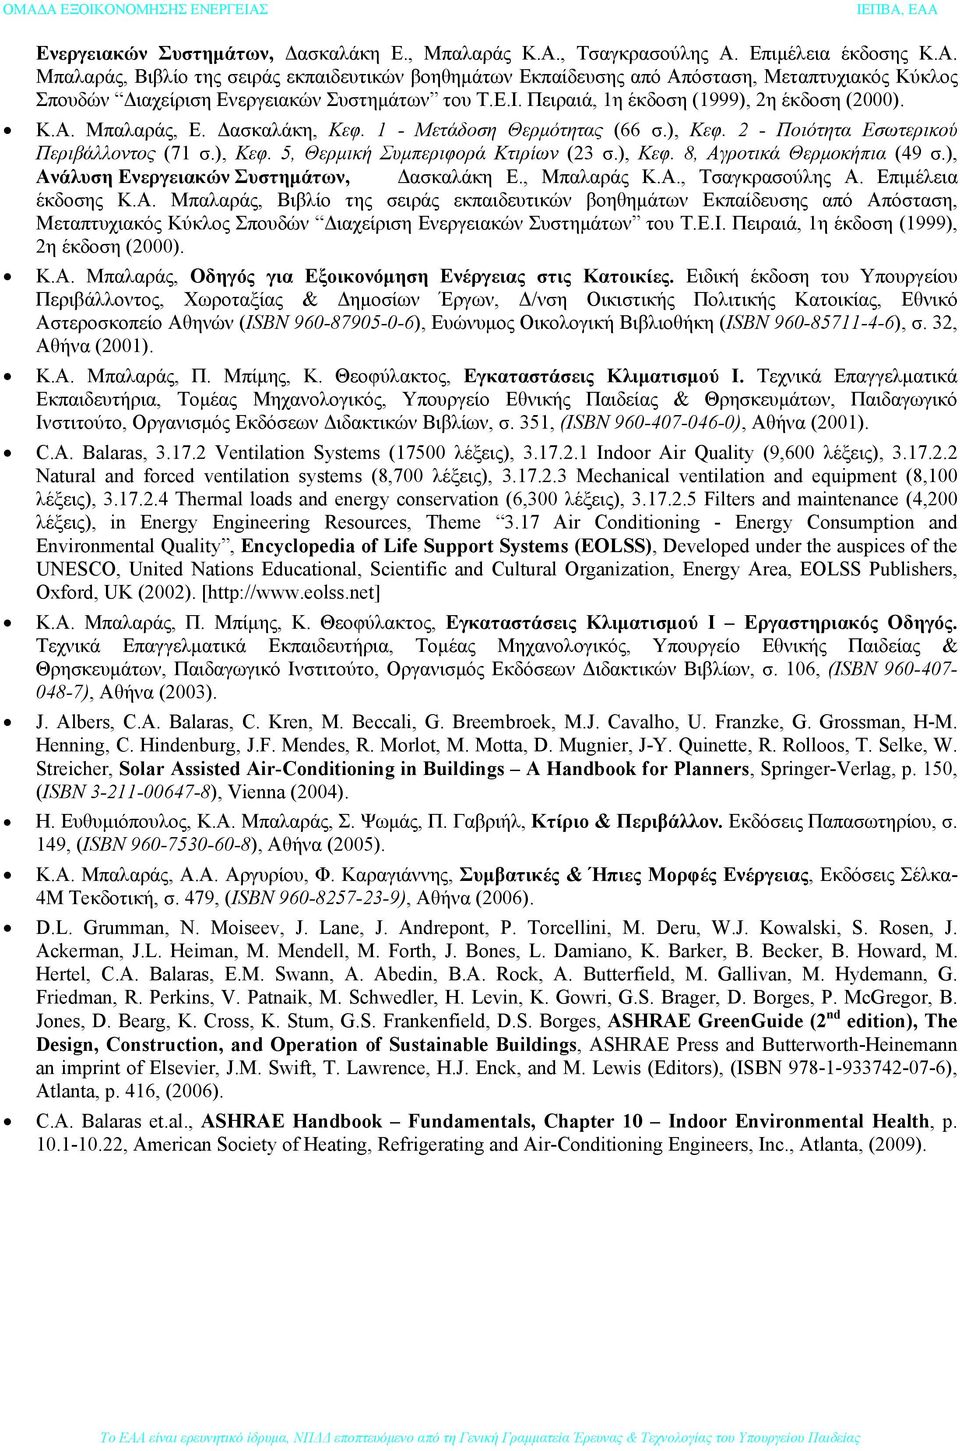 ), Κεφ. 8, Αγροτικά Θερμοκήπια (49 σ.), Ανάλυση Ε.Ι. Πειραιά, 1η έκδοση (1999), 2η έκδοση (2000). Κ.Α. Μπαλαράς, Οδηγός για Εξοικονόμηση Ενέργειας στις Κατοικίες.